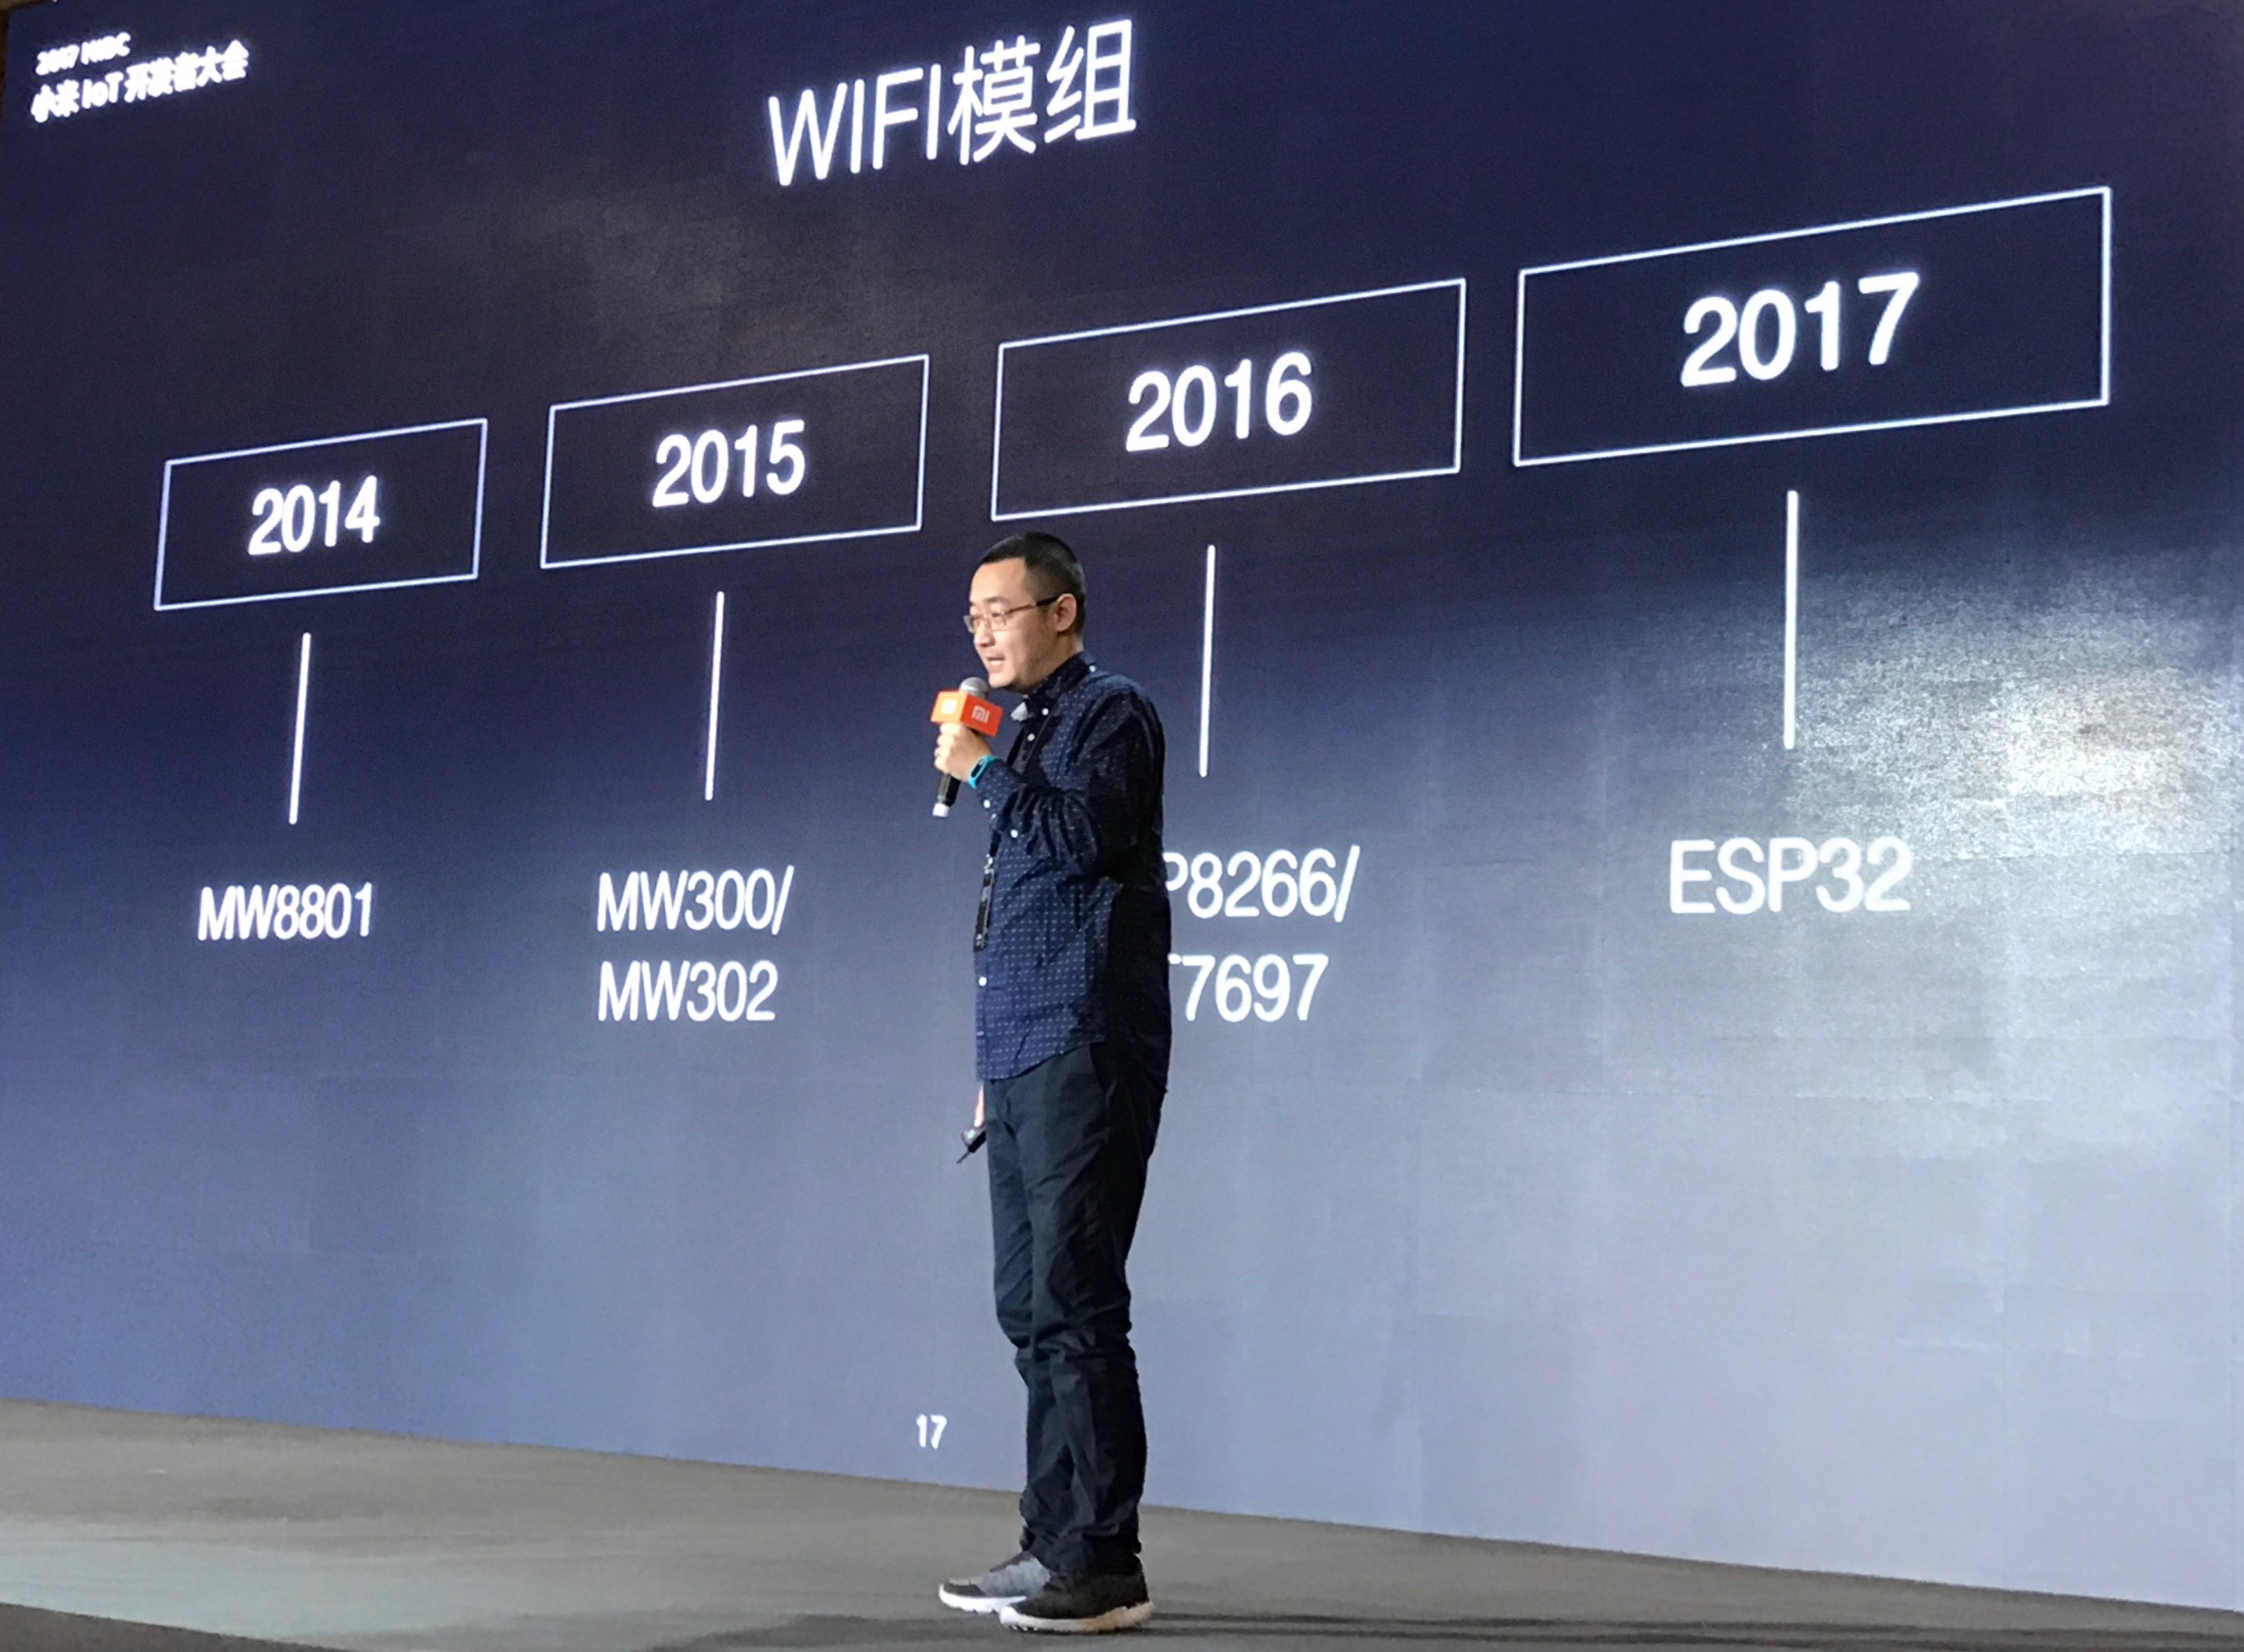 Xiaomi+Espressif 2017MIDC i